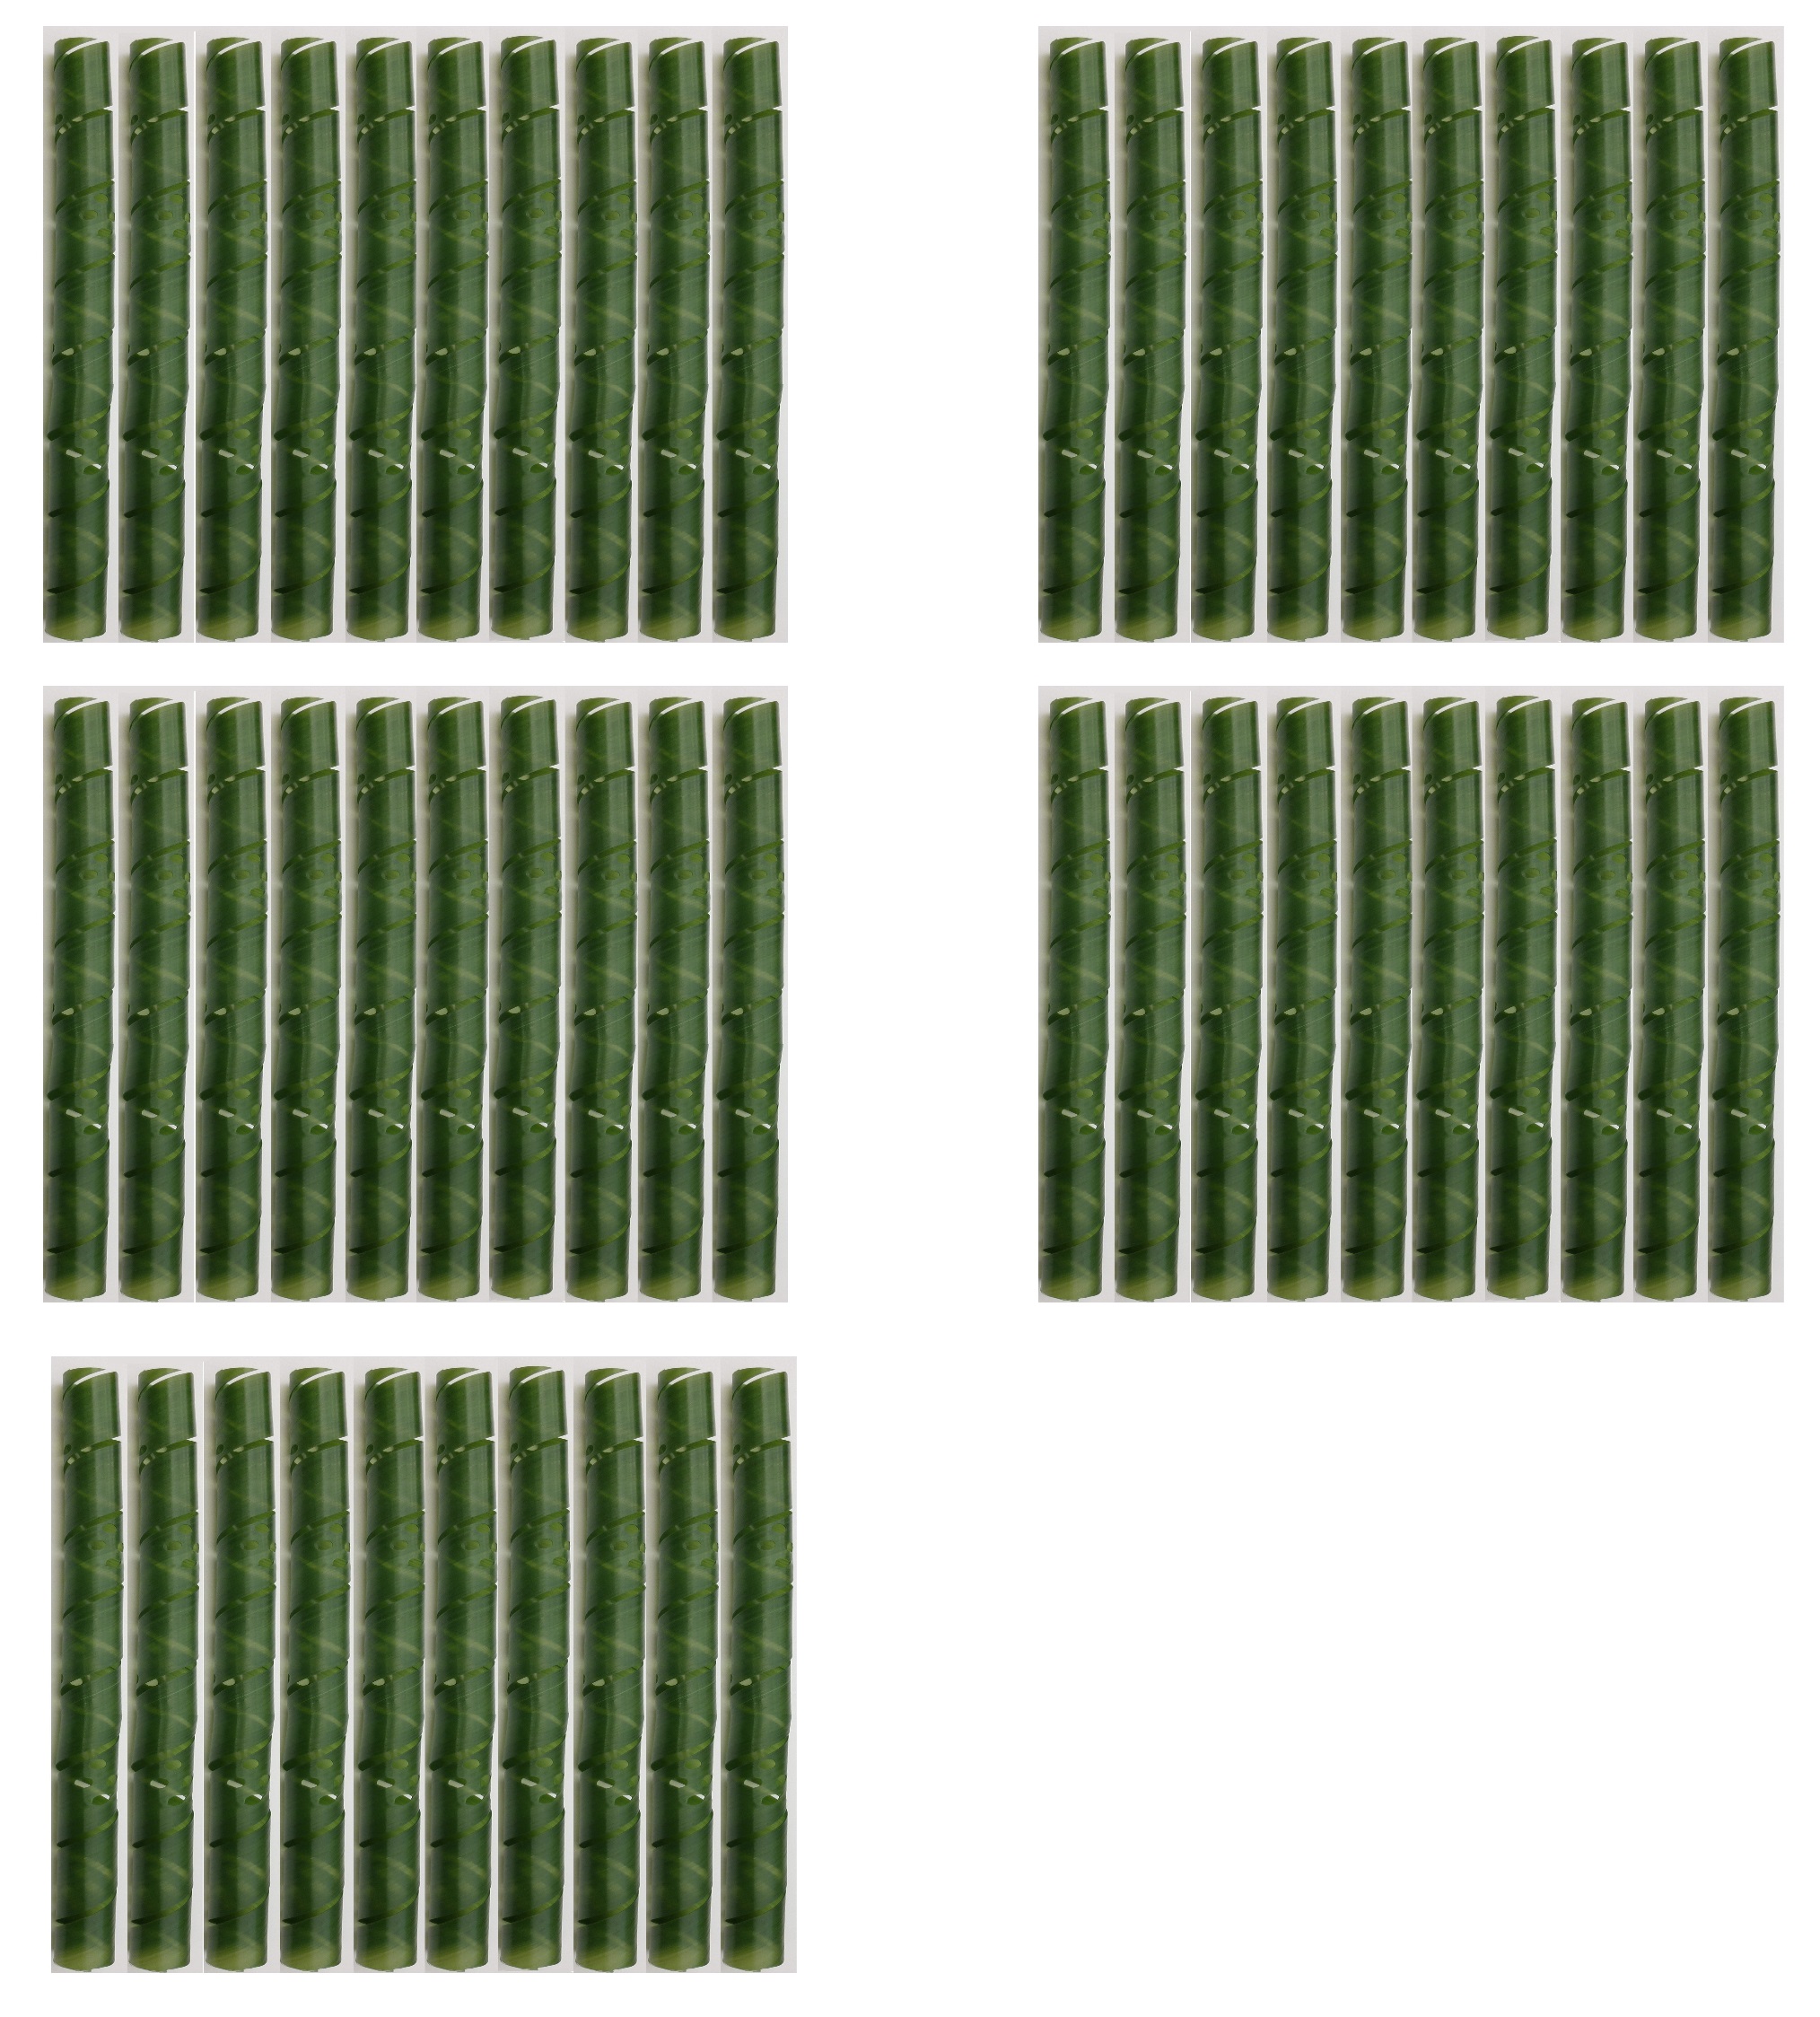 50 Baumschutzspiralen aus witterungsbeständigem Kunststoff, 60 cm lang,  gelocht, Farbe grün.